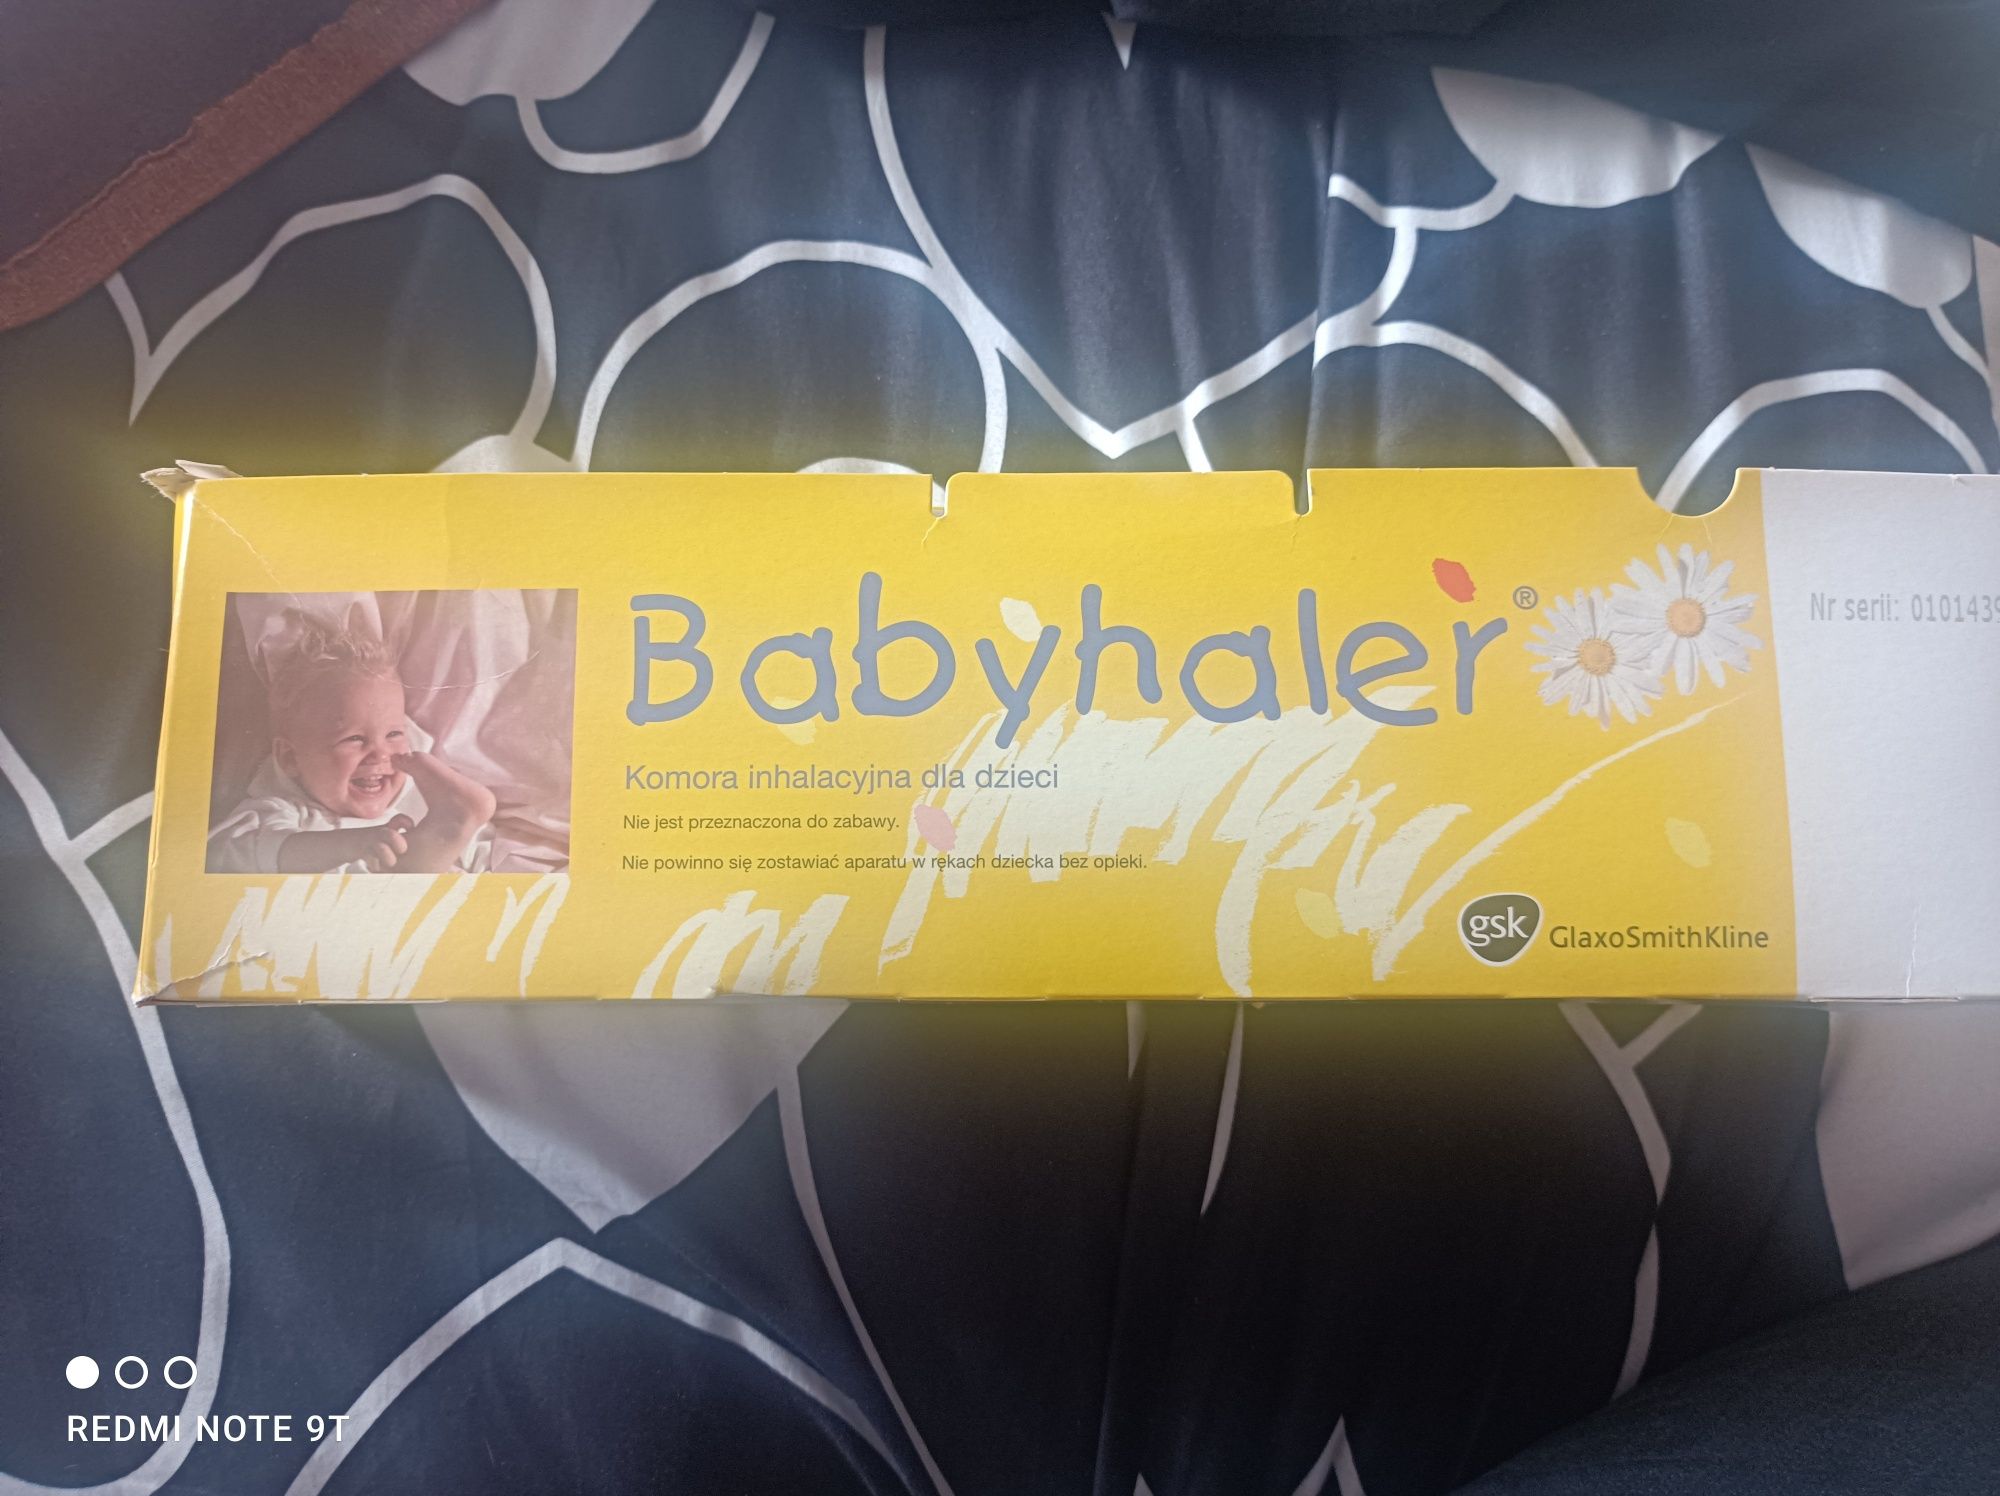 Babyhaler, Komora inhalacyjna dla dzieci i niemowląt